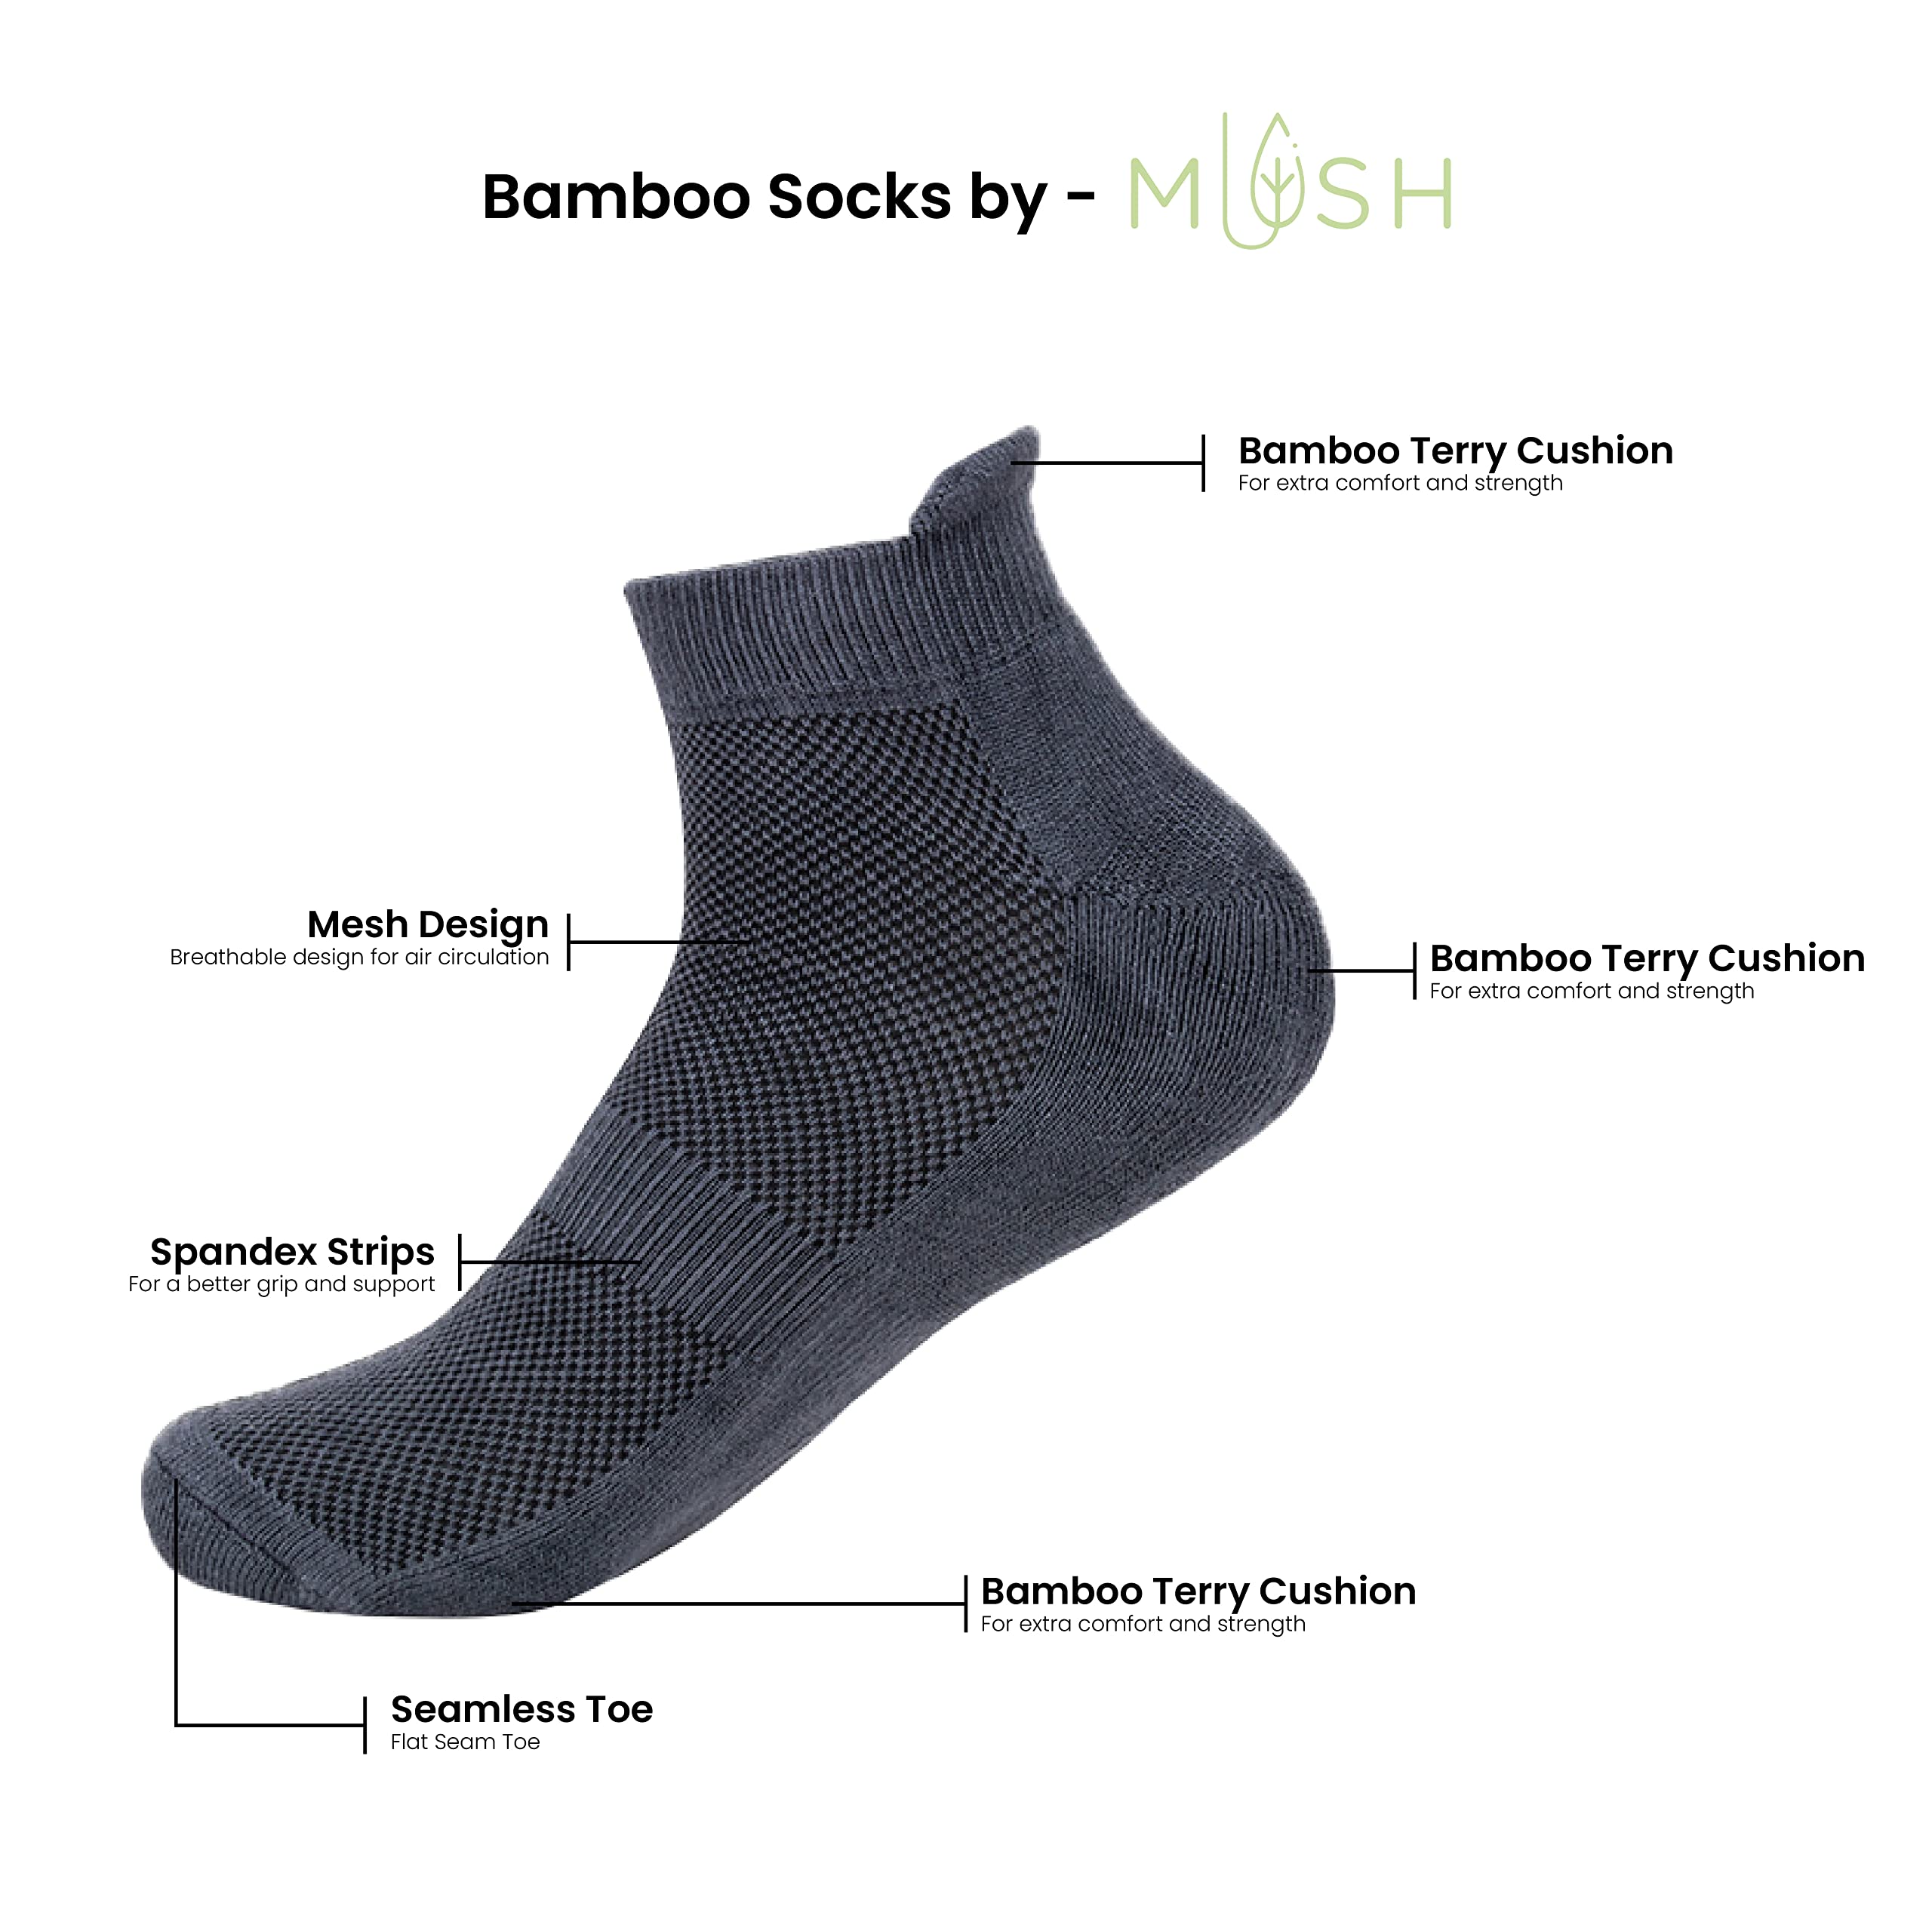 Mush Bamboo Anti Odor, Breathable, Anti Blister Ankle Socks for Men & Women for Running, Sports & Gym (9 Black, Dark Grey, Sea Green, Lavender, Sky Blue, Navy Blue, Lavender, Beige, White)